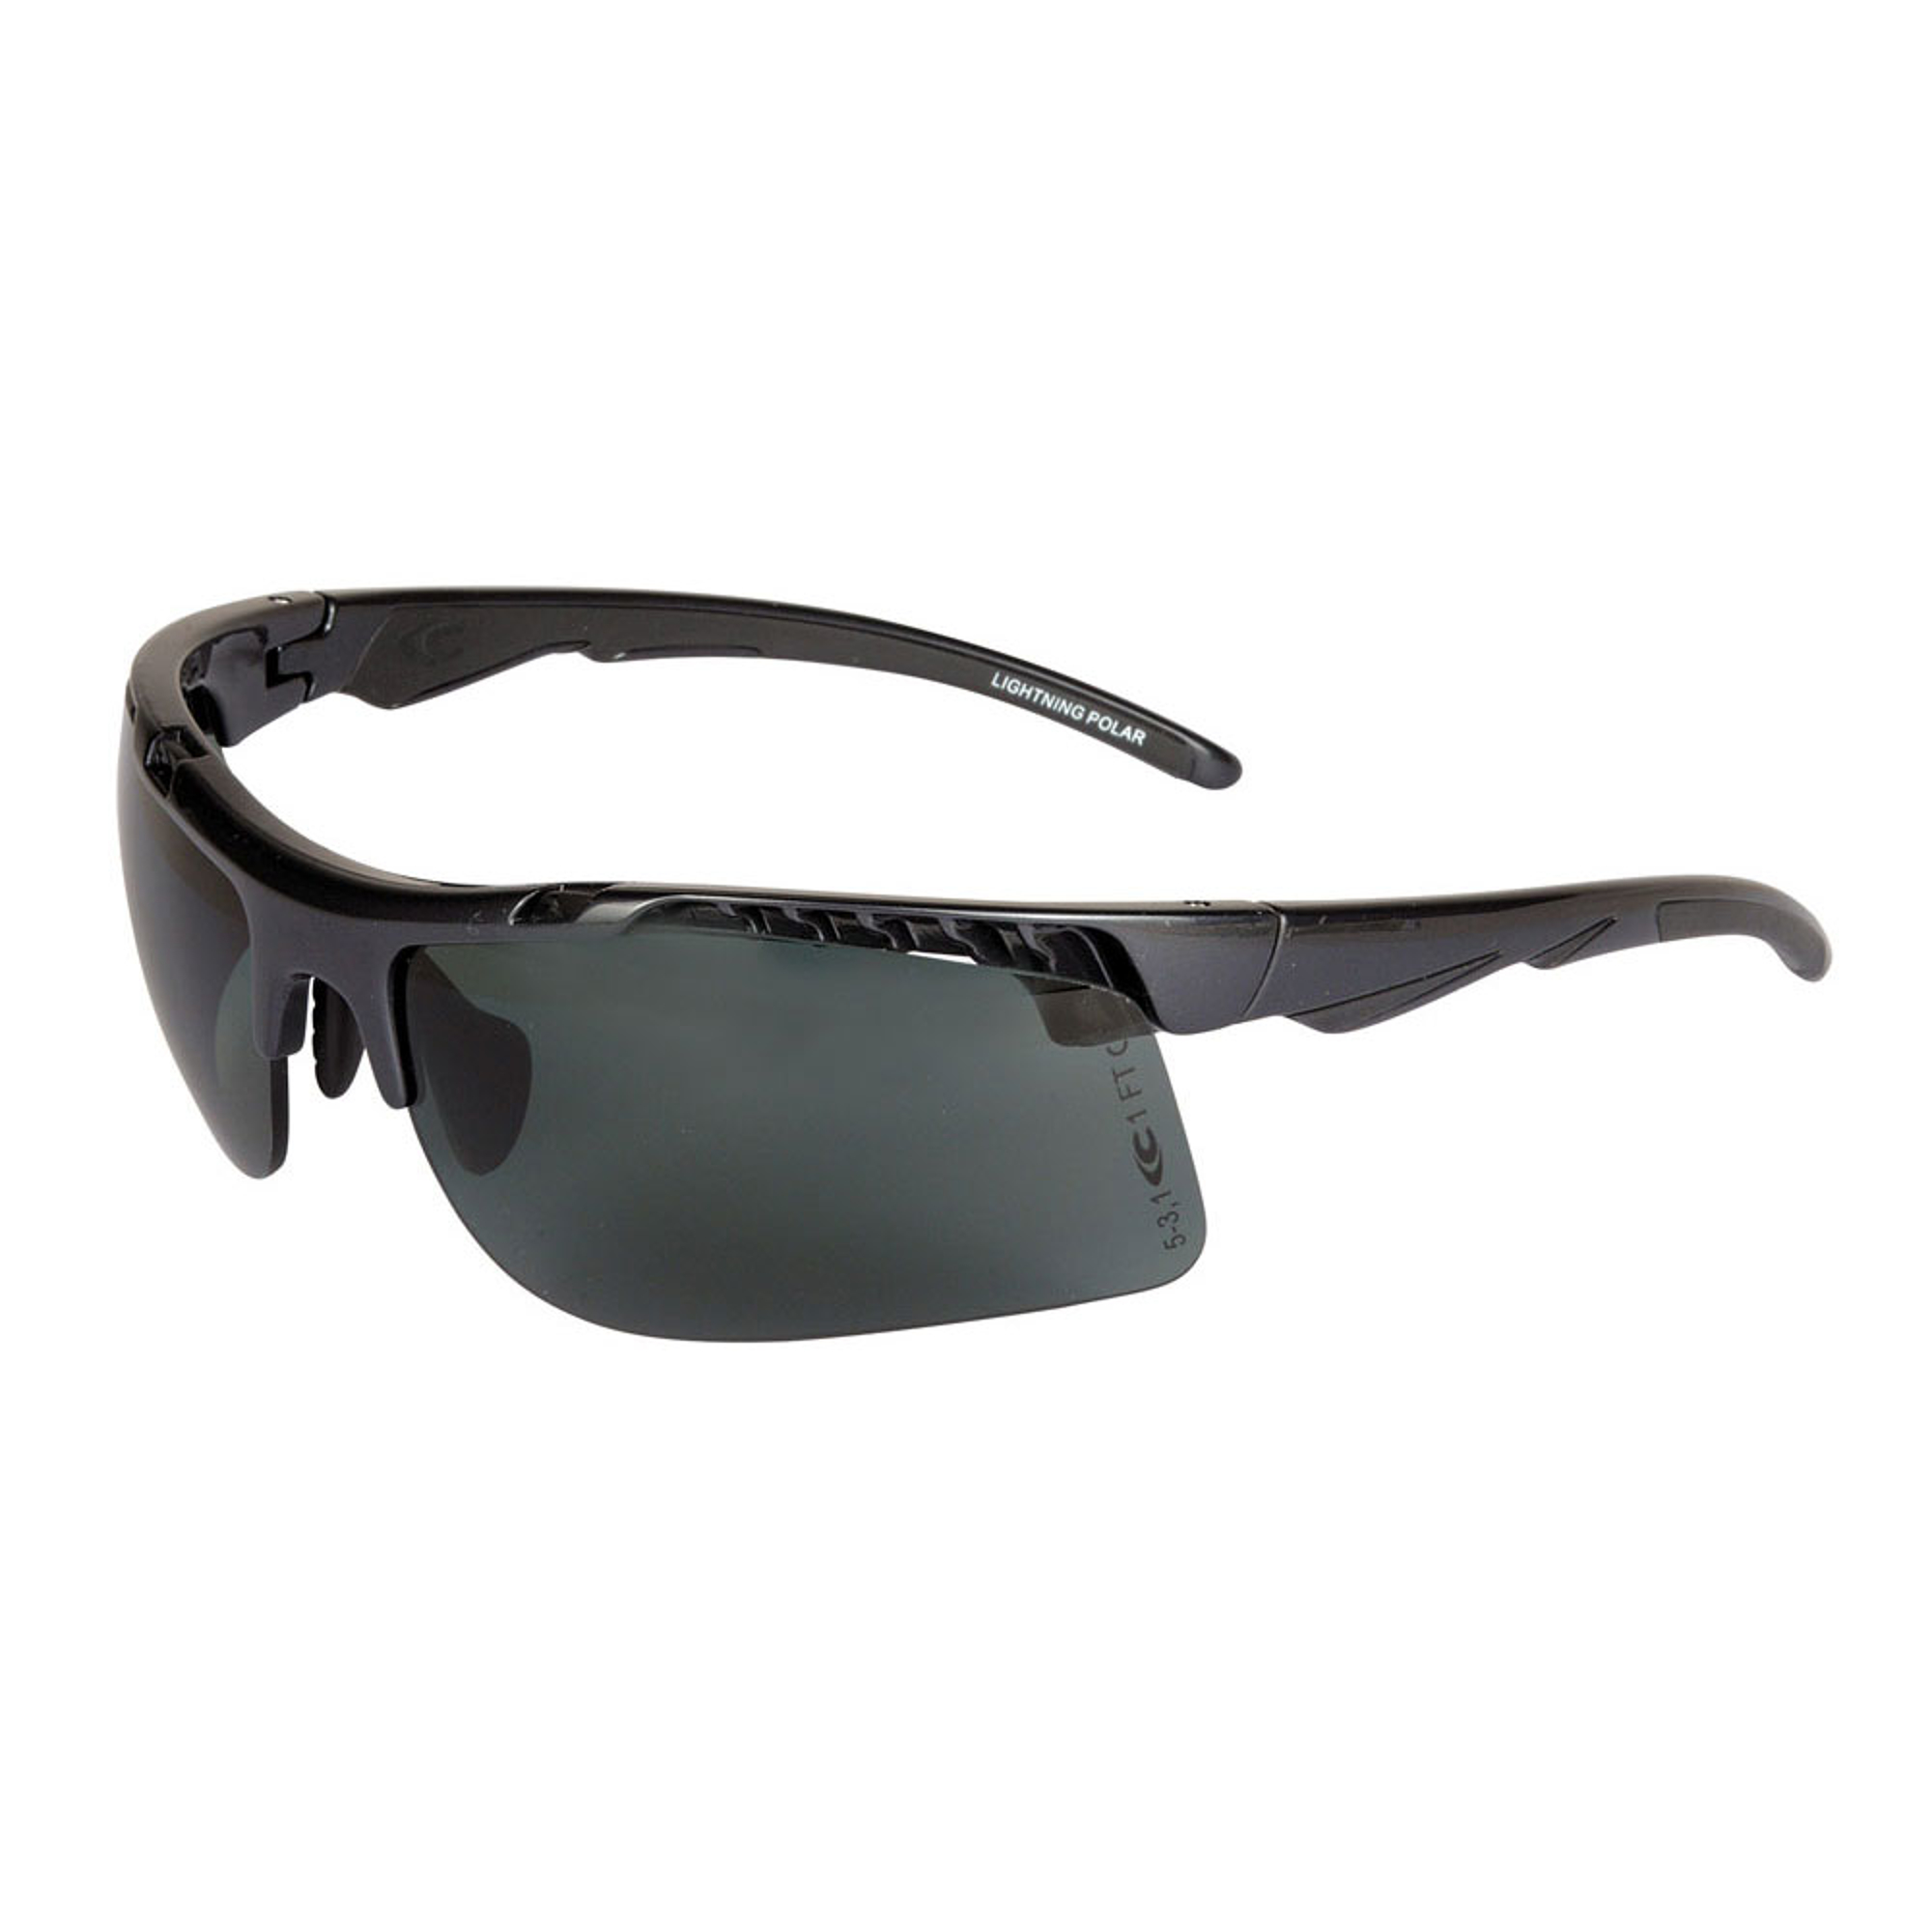 Cofra LIGHTNING POLAR UV400  - polarizált védőszemüveg (fekete)